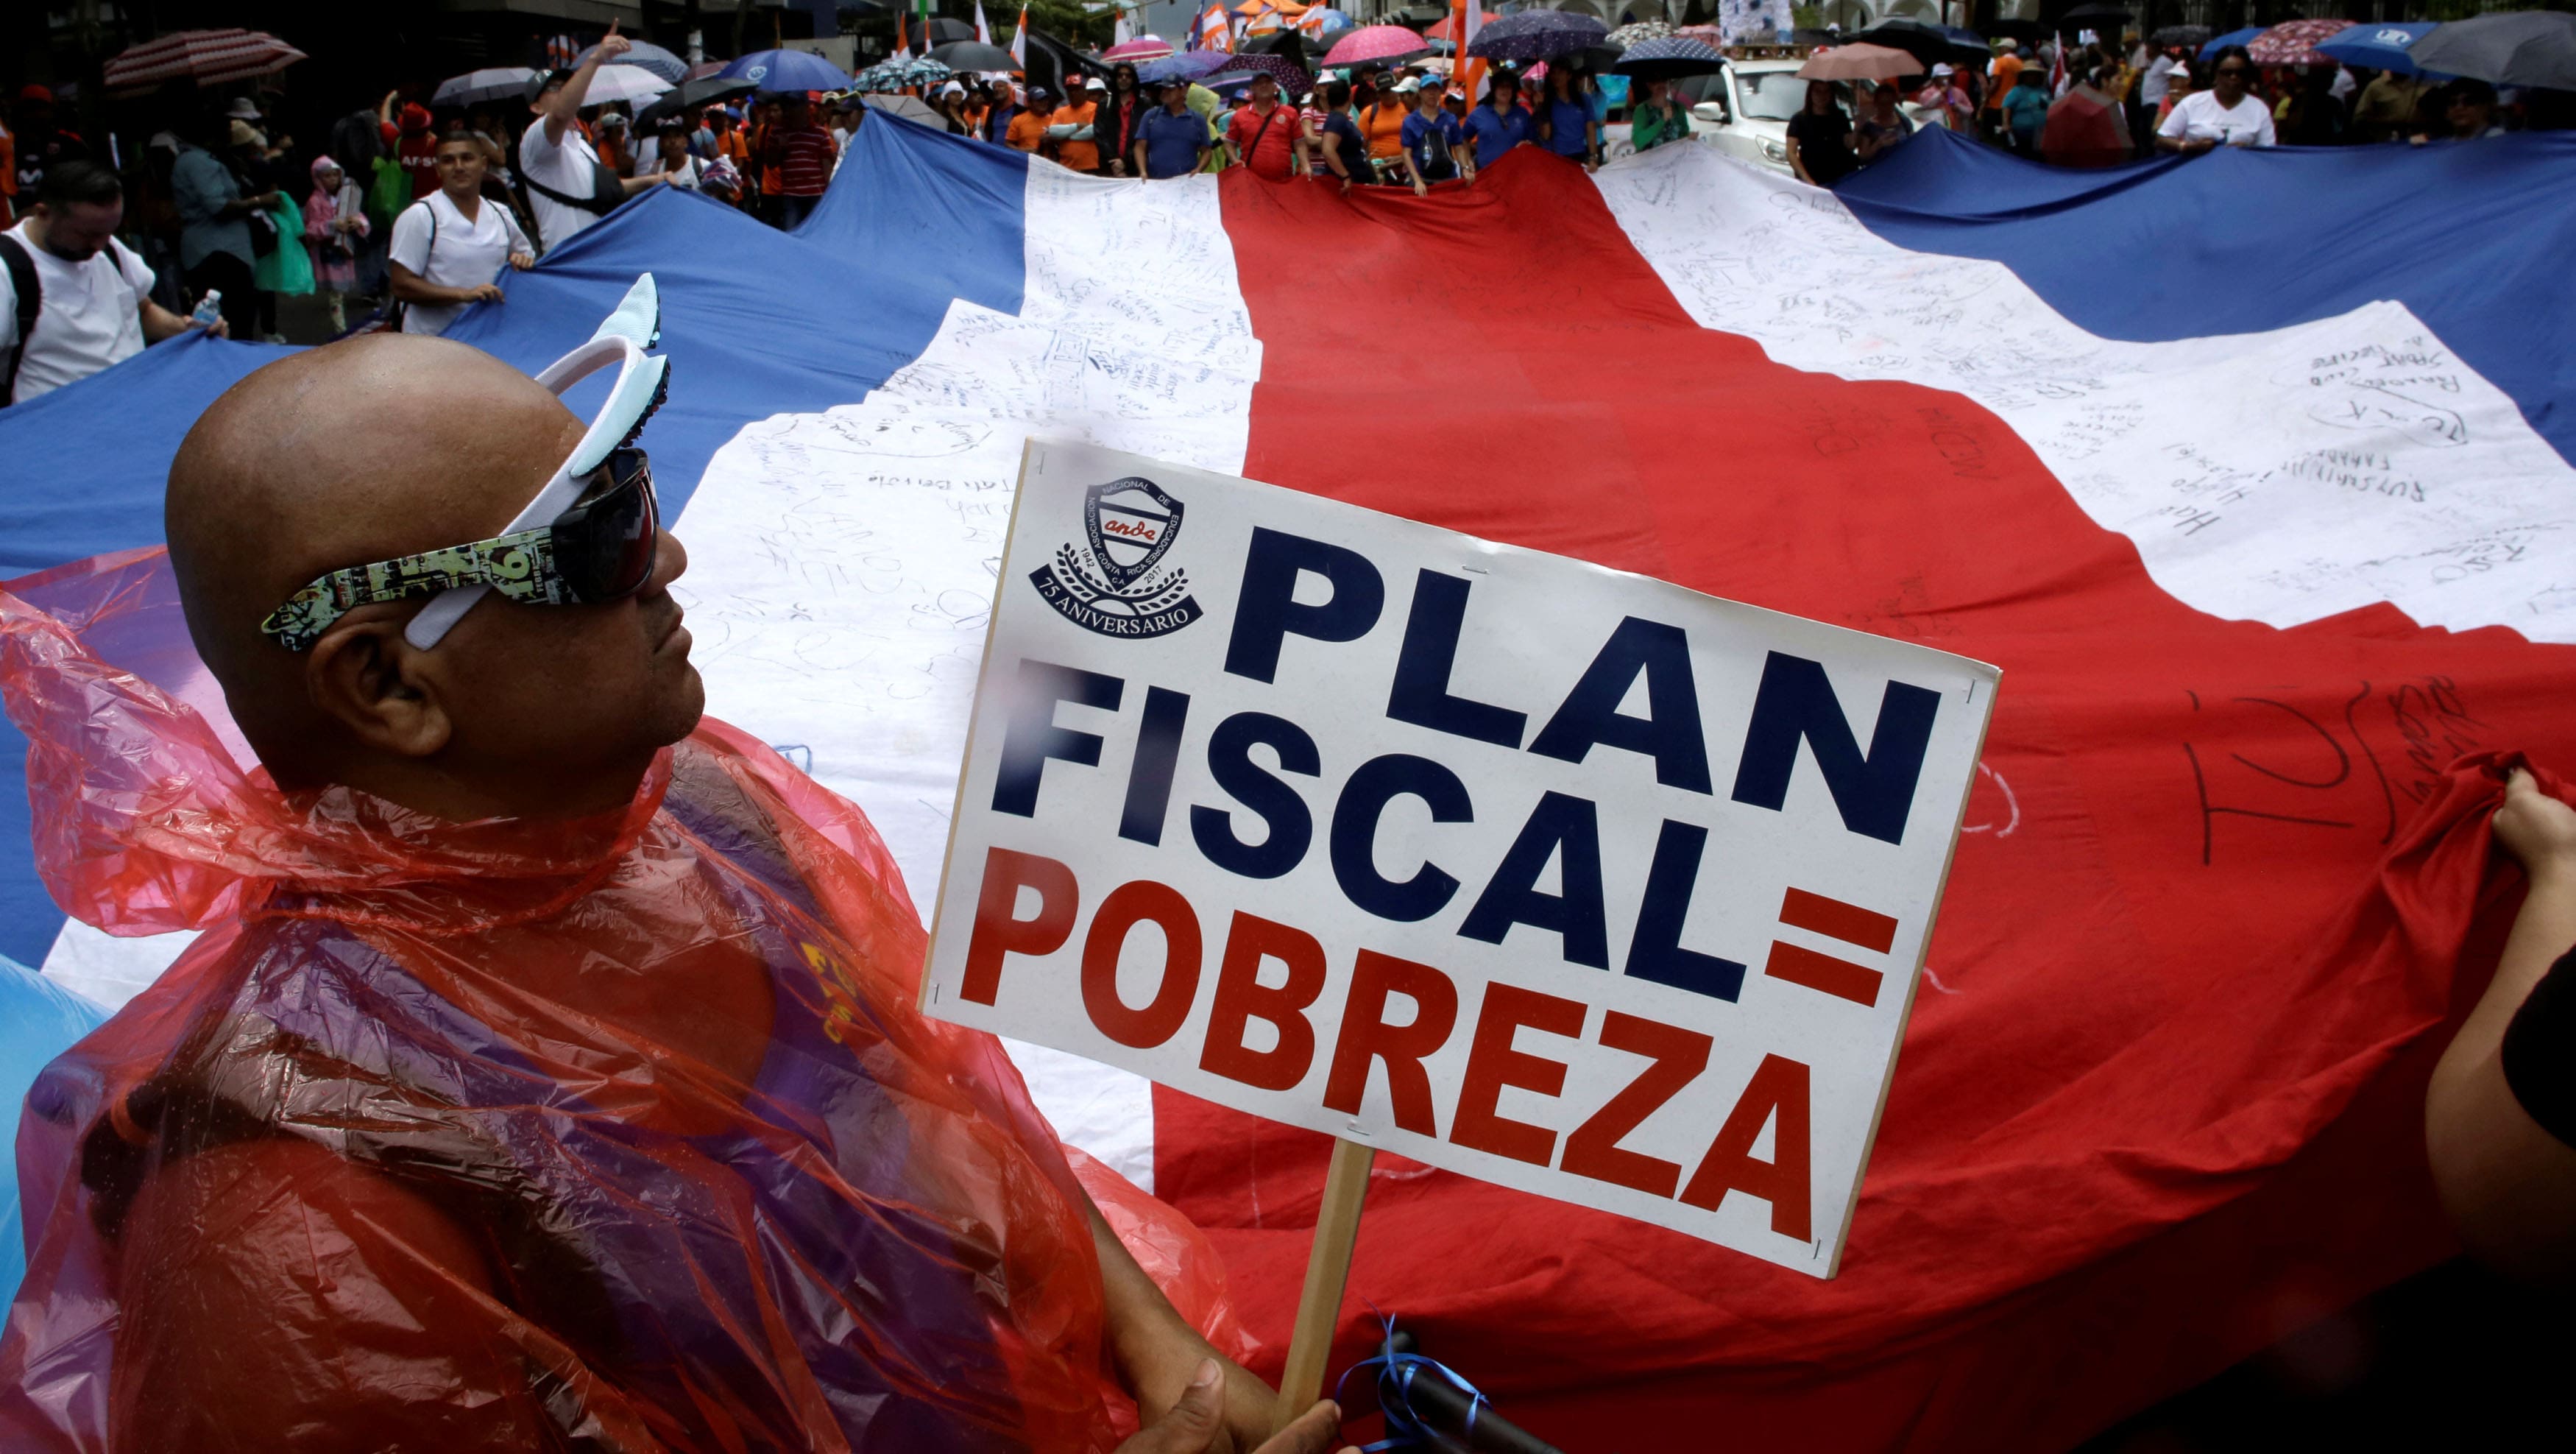 Los sindicalistas aseguran que la reforma fiscal, lanzada por el presidente Alvarado, solo favorece a la clase alta del país.